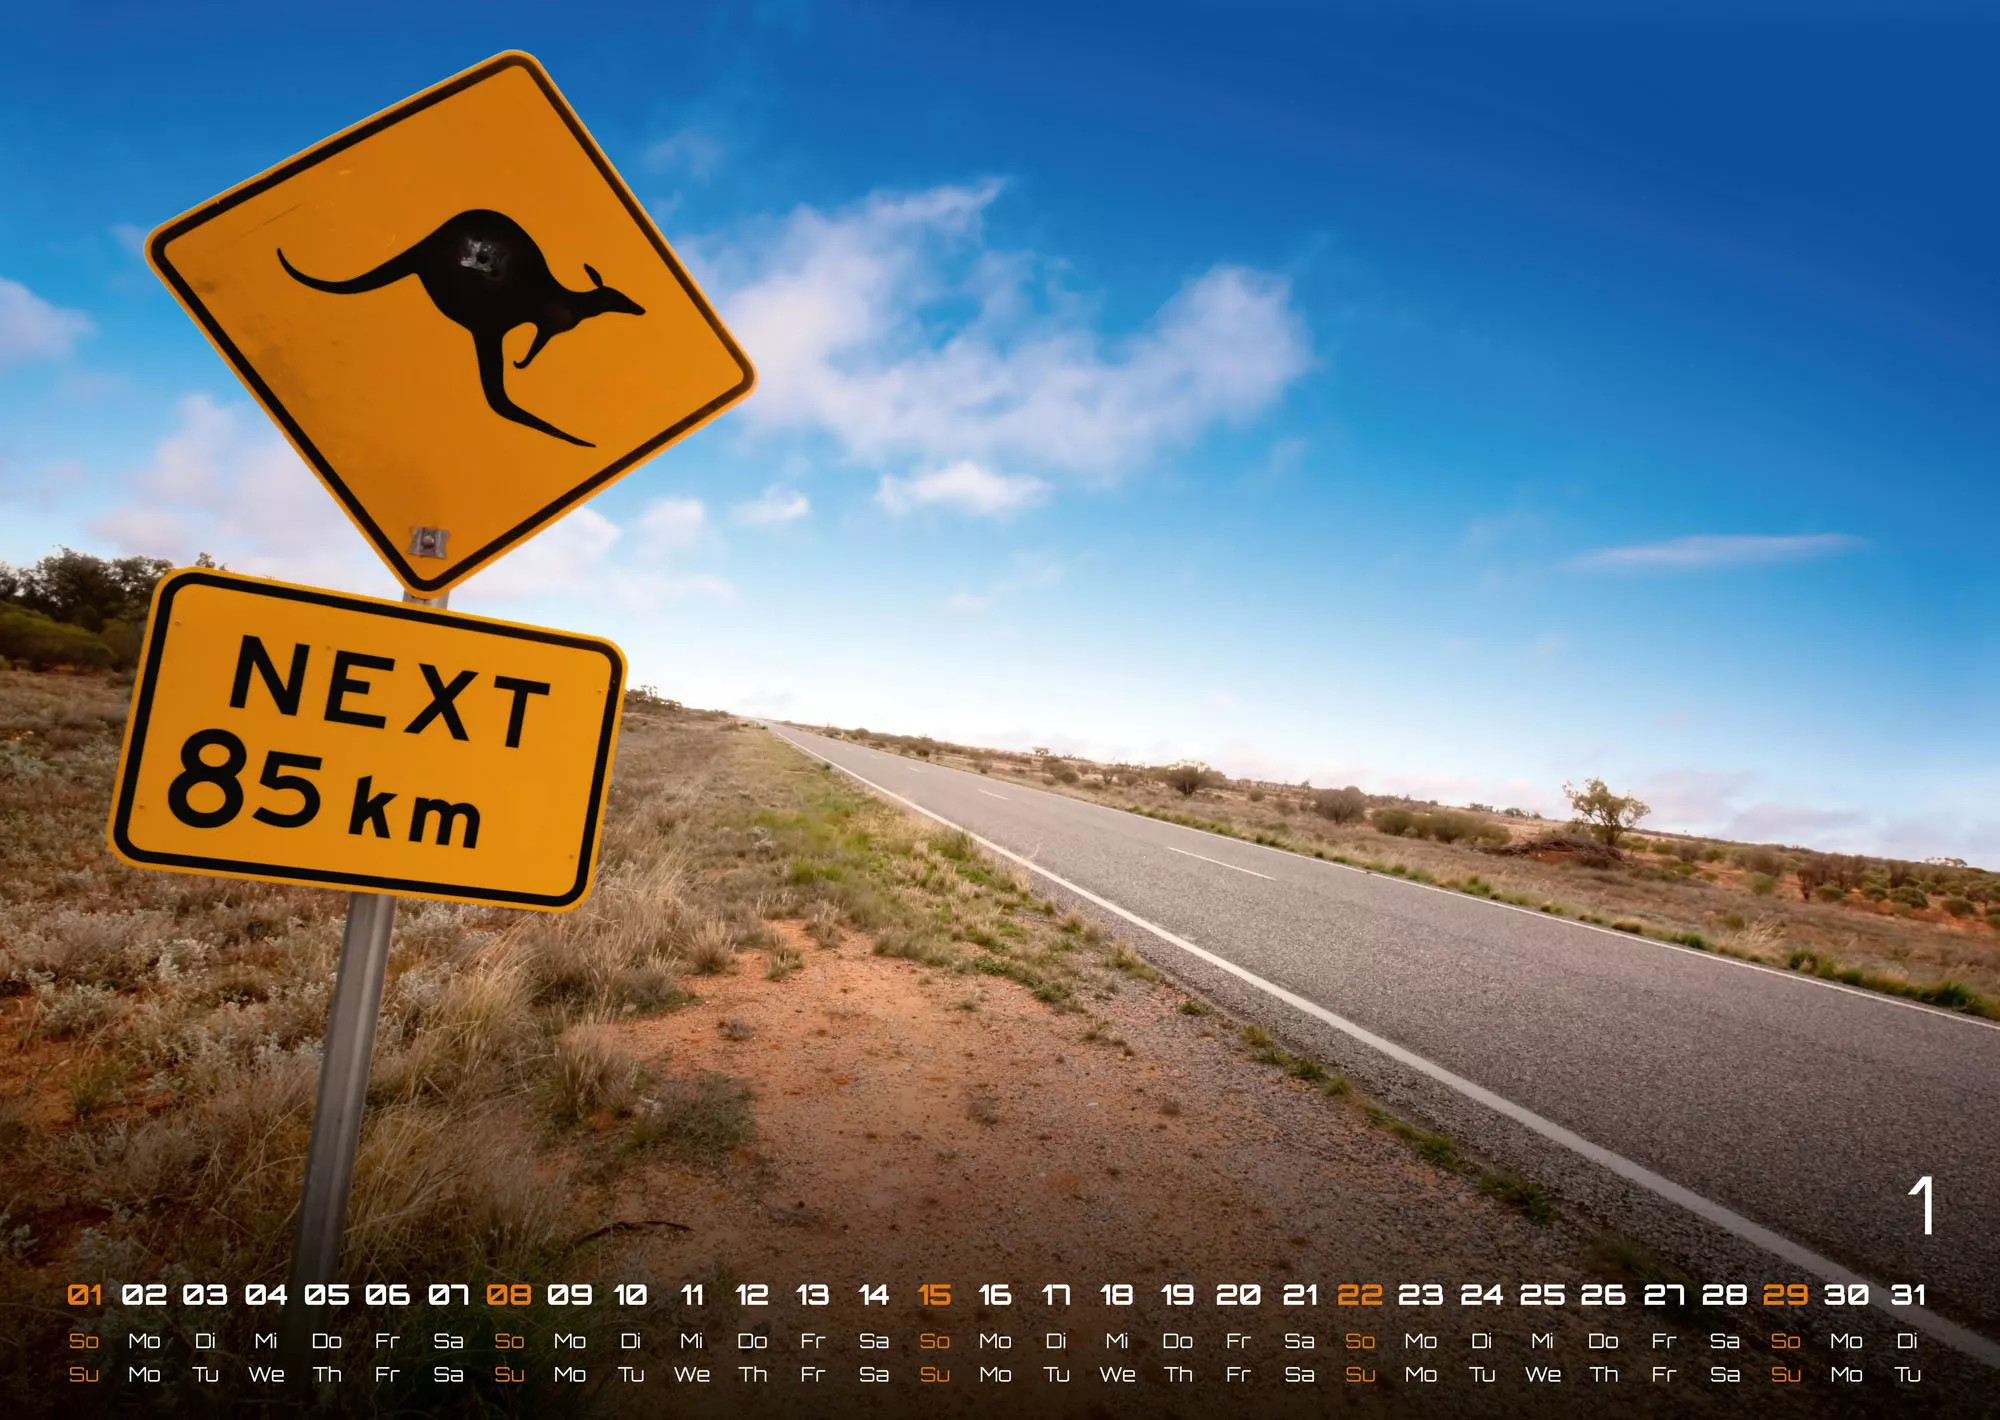 Australien - das Land der Kängurus - 2023 - Kalender